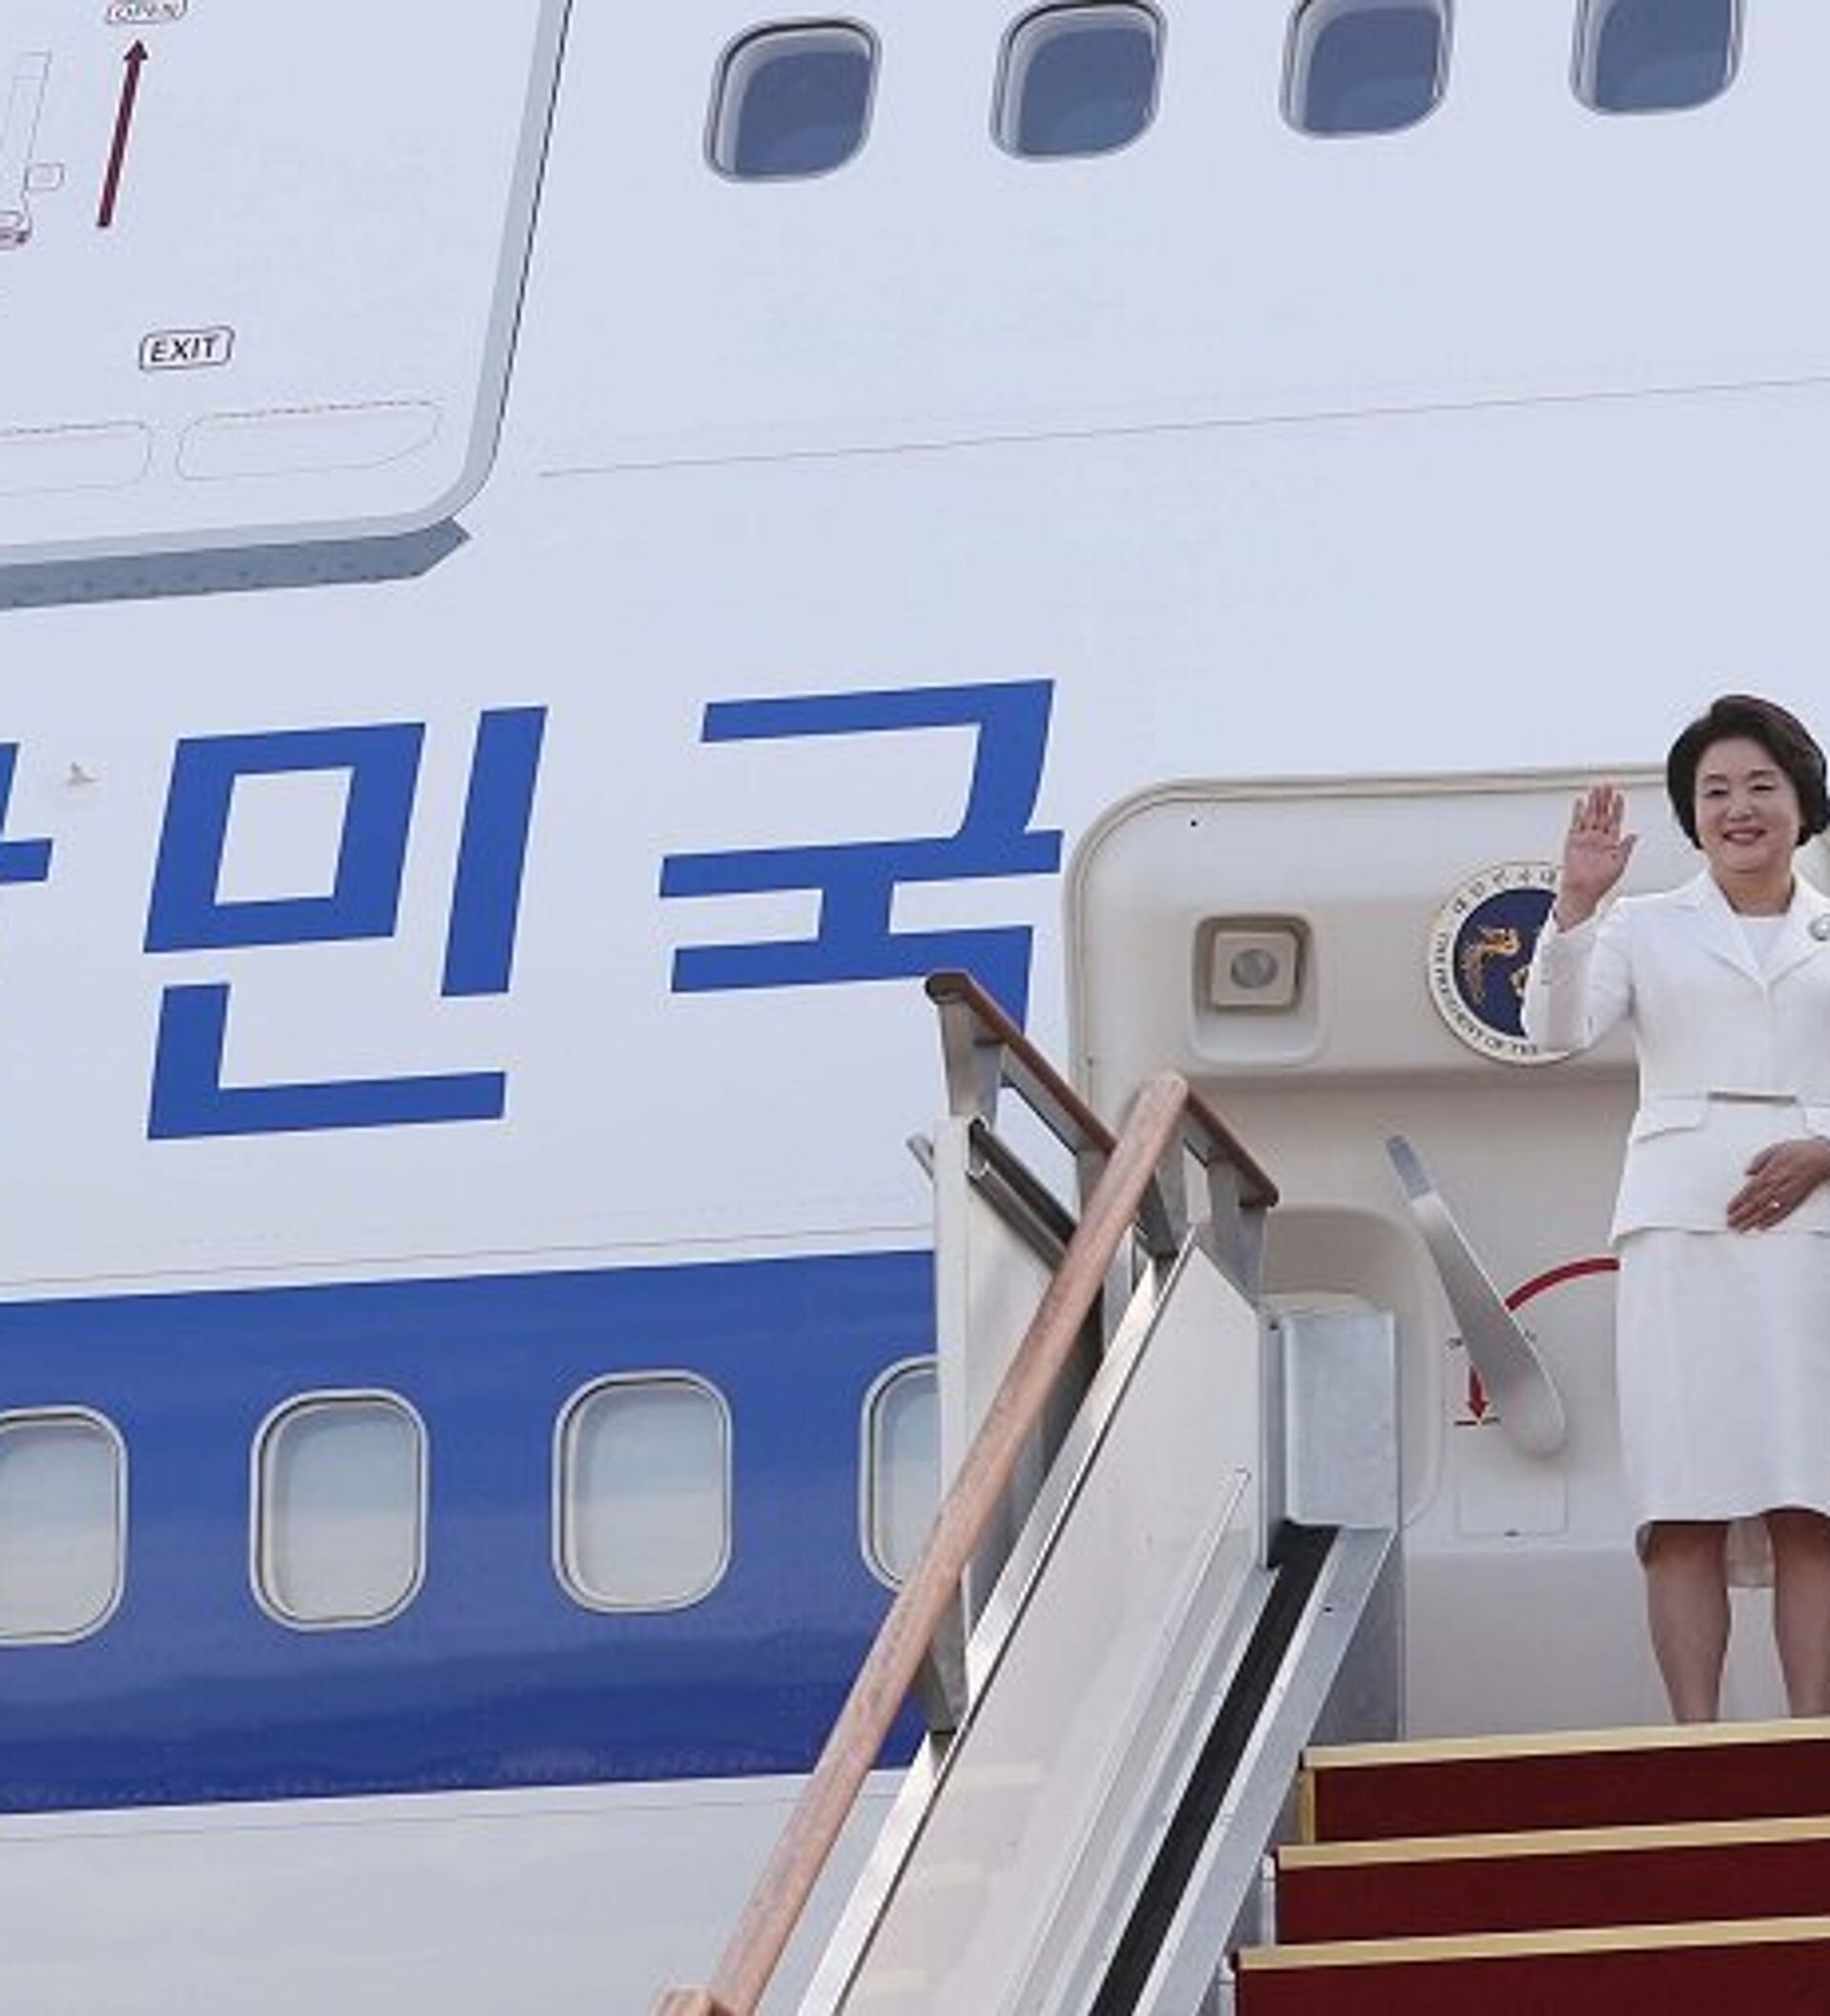 韩国总统文在寅抵达美国 向人群挥手致意